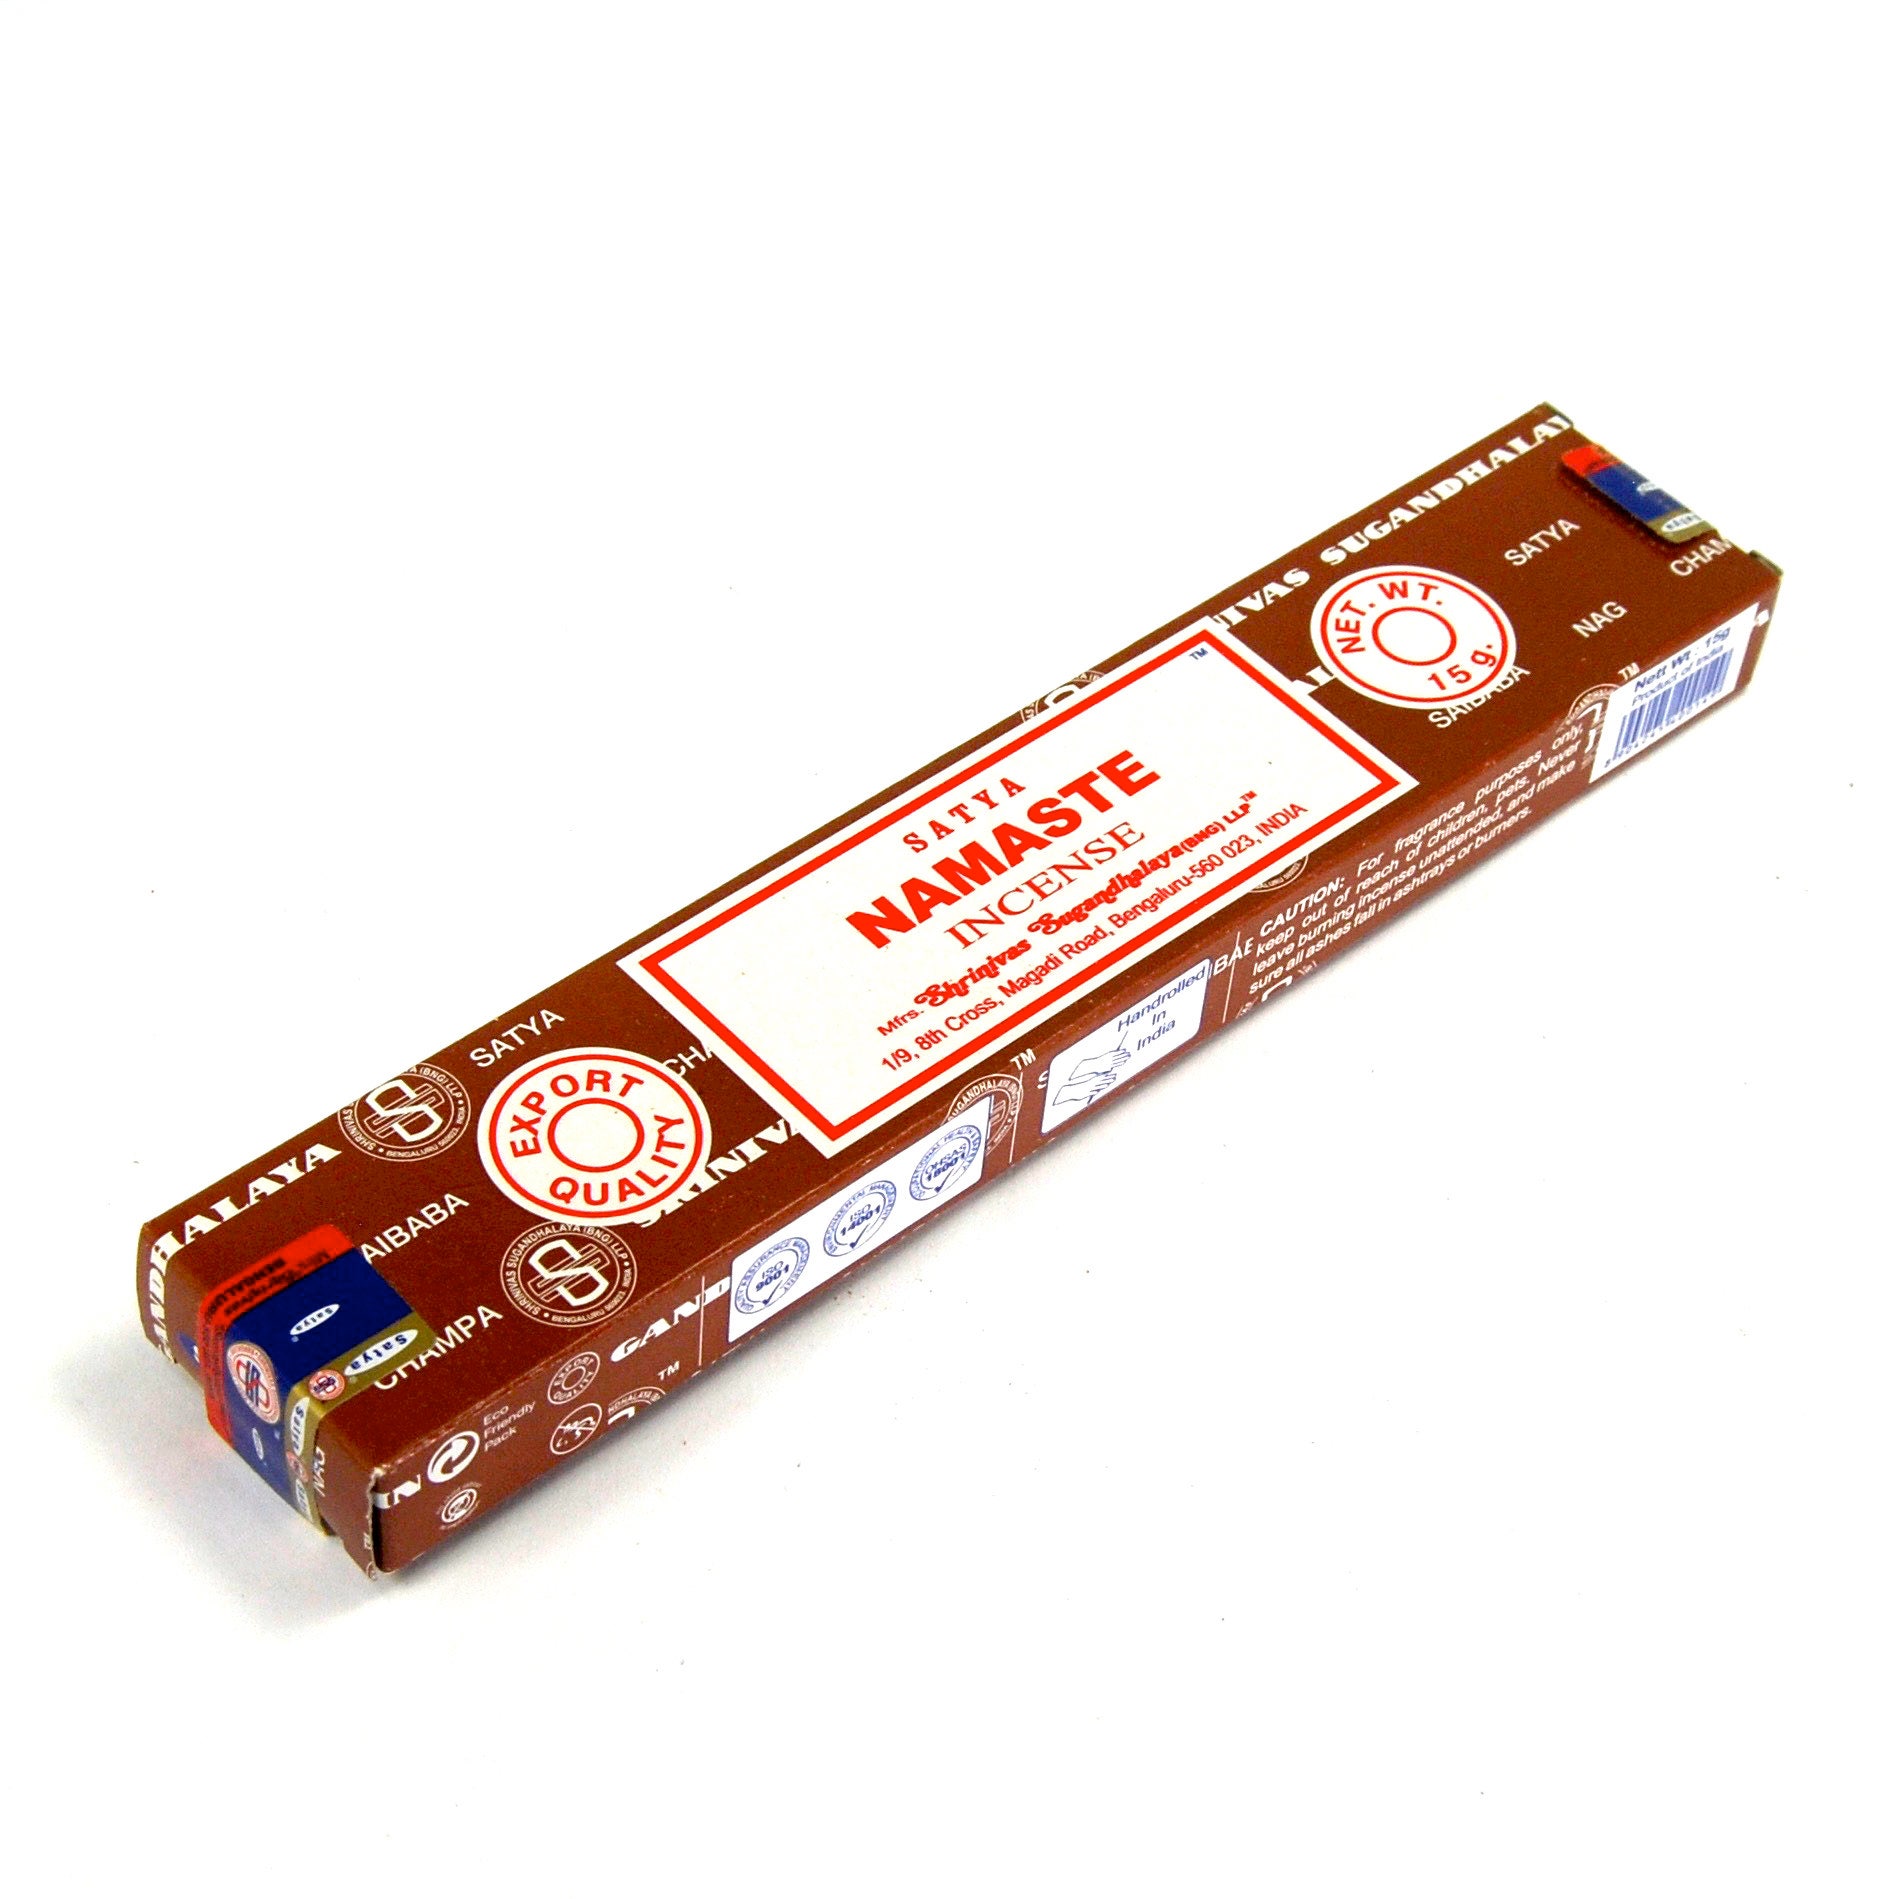 Download Satya NAMASTE Incense Sticks 15 Gram Box